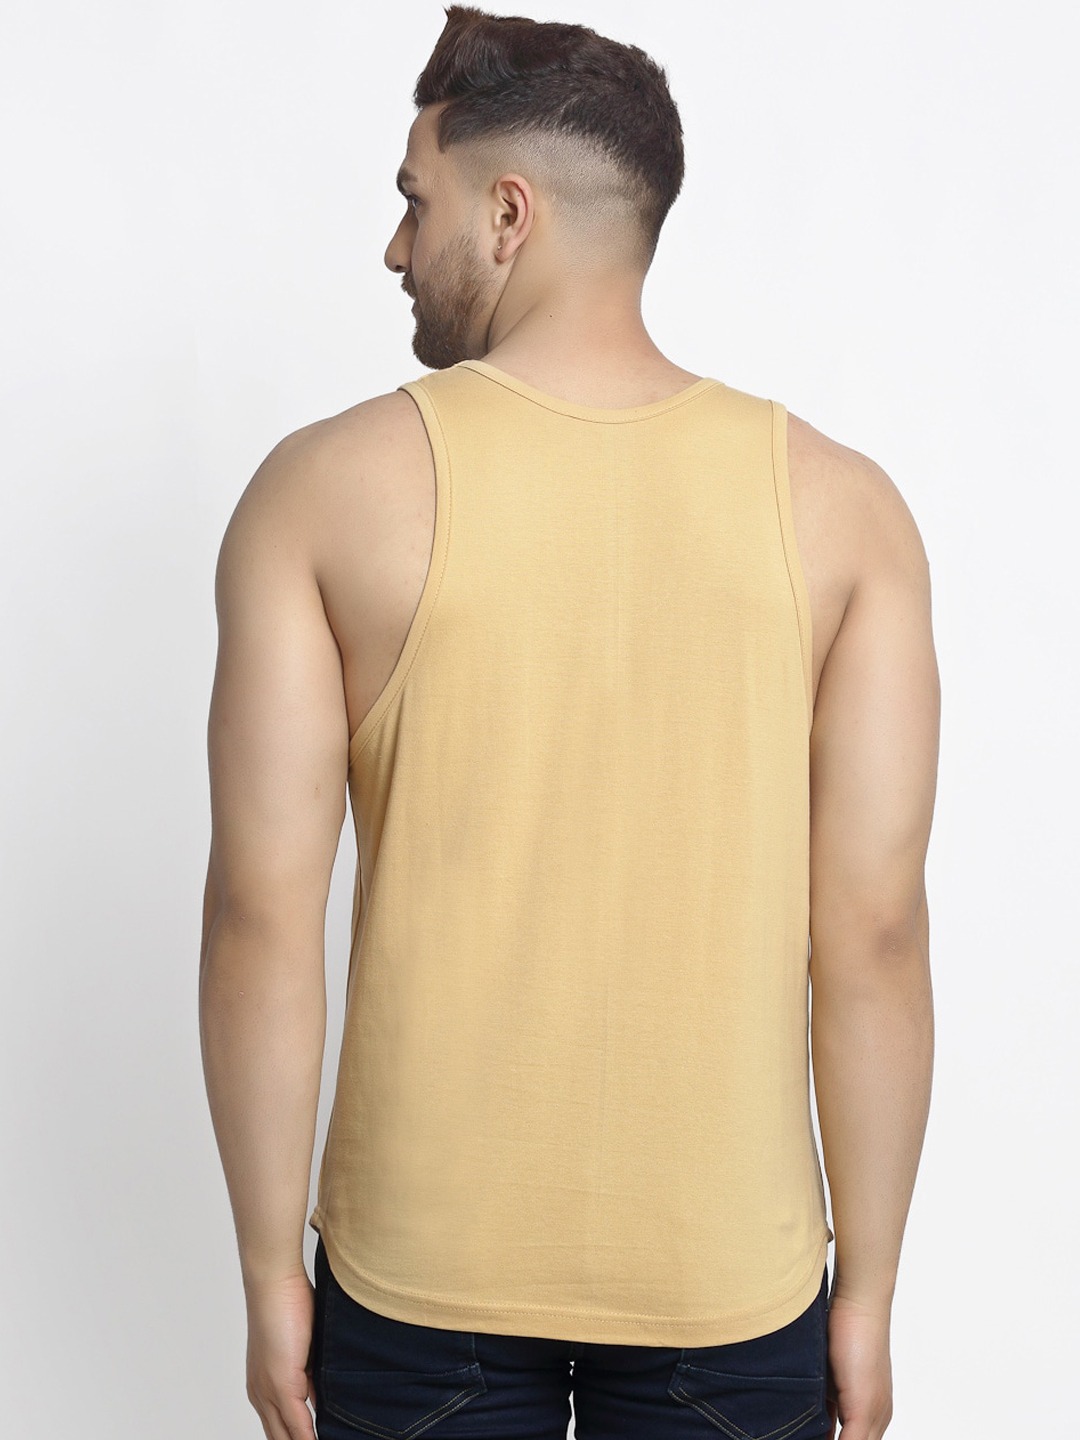 Clothing Innerwear Vests | Friskers Men Beige & Black Printed Pure Cotton Gym Vest - SV85392